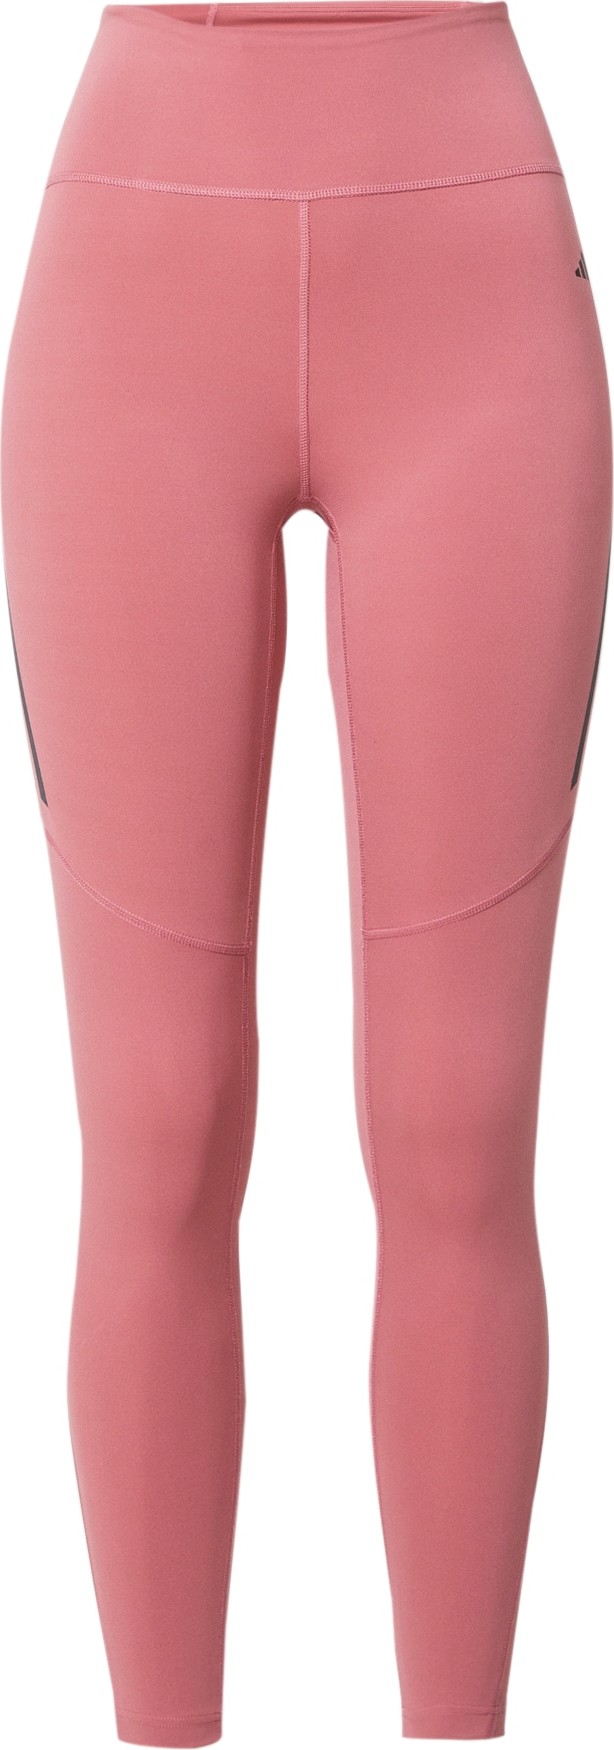 ADIDAS PERFORMANCE Sportovní kalhoty pink / černá